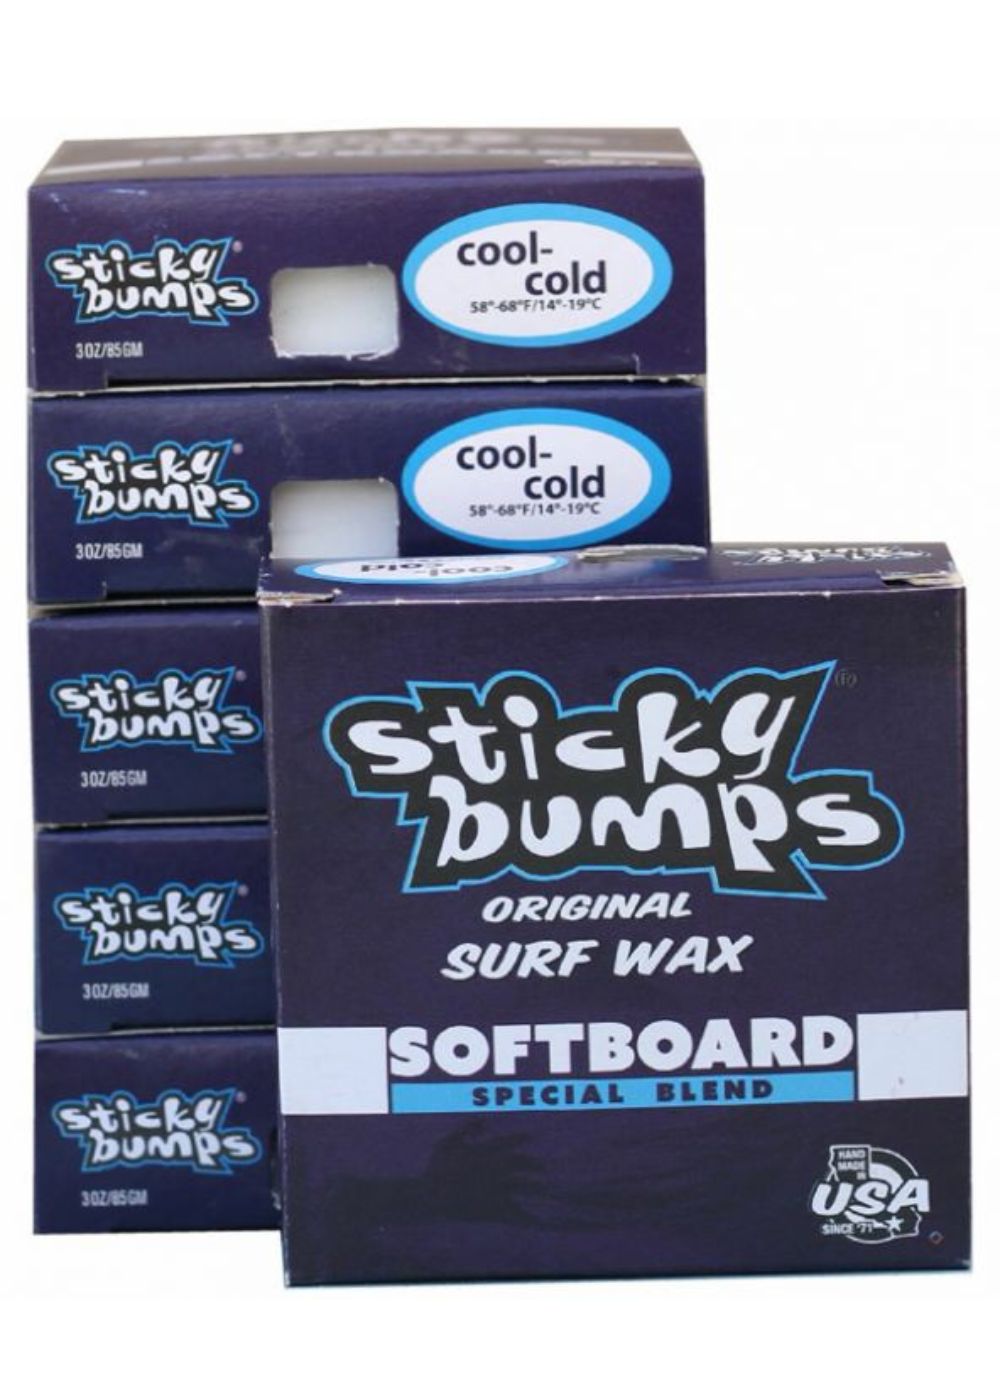 שעוות STICKY BUMPS - softboard cool-cold שעוות, COLD-COOL